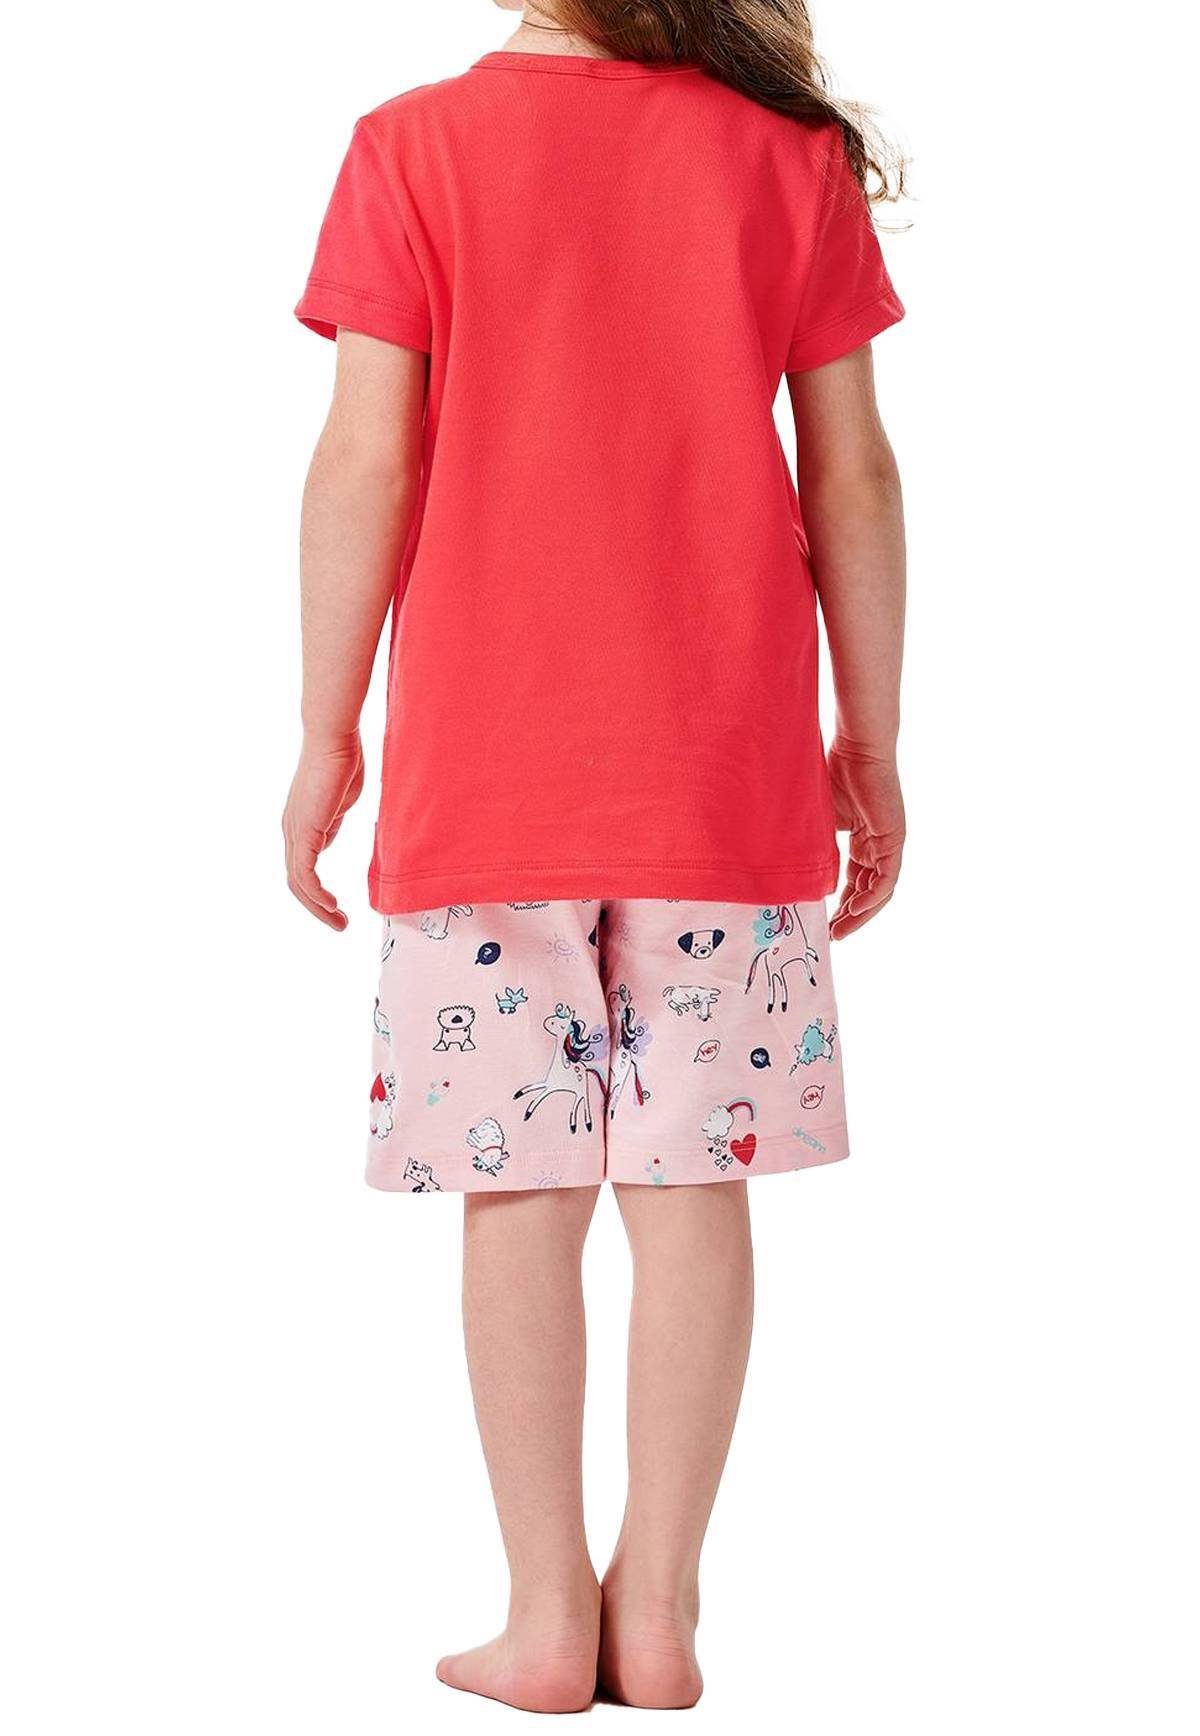 Kinder, - Rot Motiv Mädchen Schlafanzug Pyjama Schiesser kurzarm,